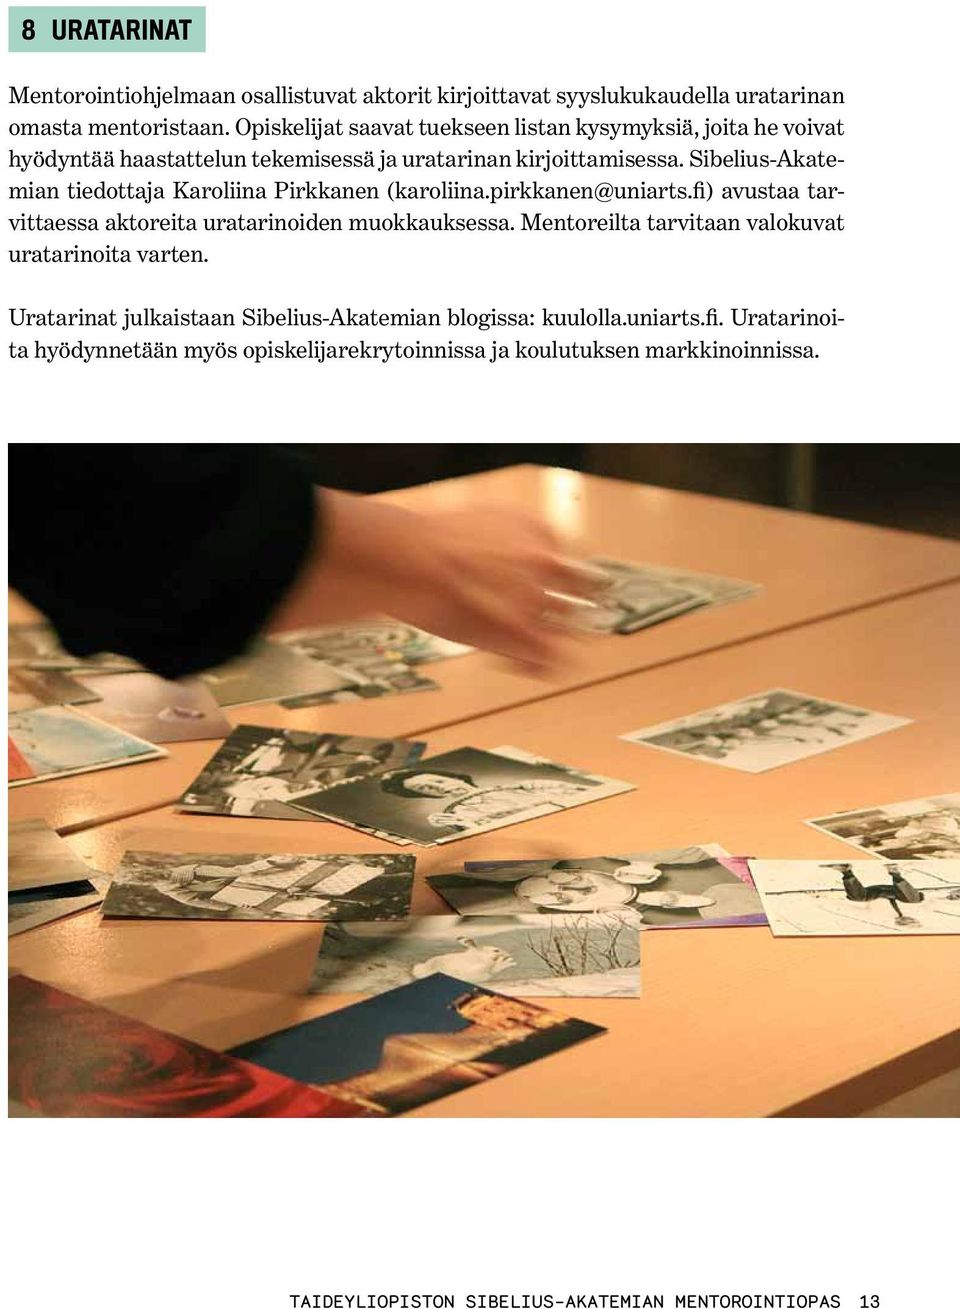 Sibelius-Akatemian tiedottaja Karoliina Pirkkanen (karoliina.pirkkanen@uniarts.fi) avustaa tarvittaessa aktoreita uratarinoiden muokkauksessa.